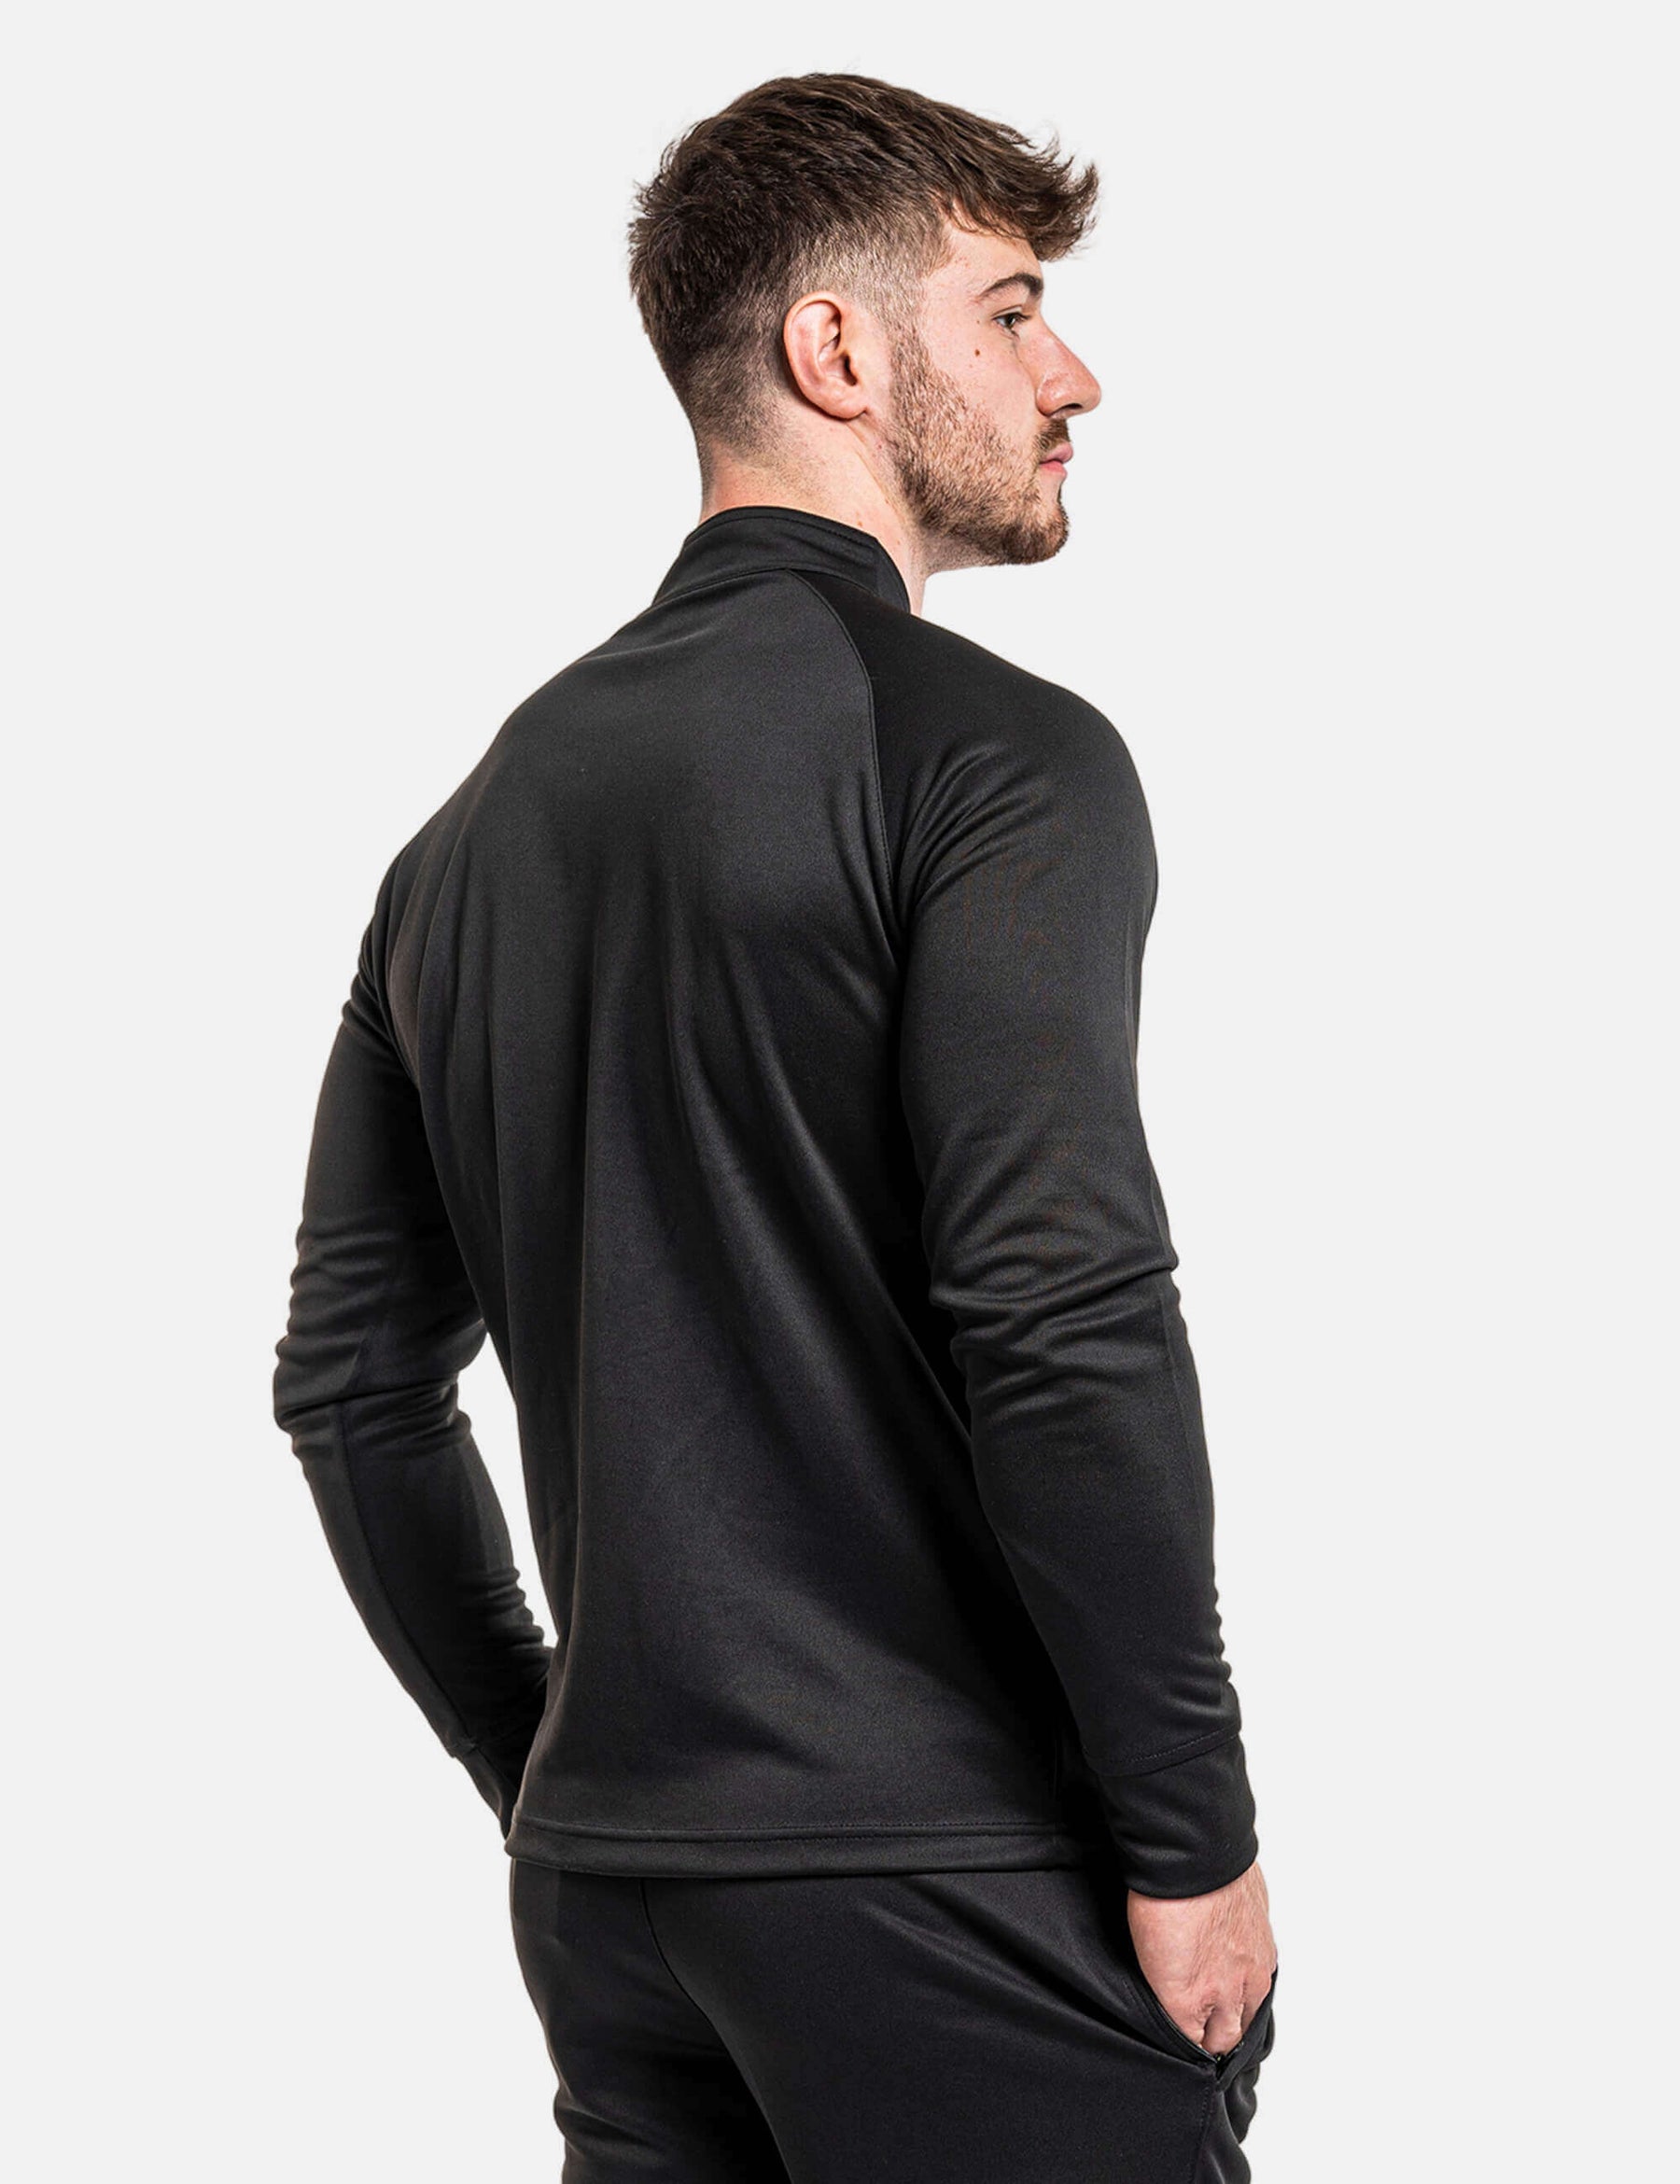 product photo of calisthenics jacket in black back side